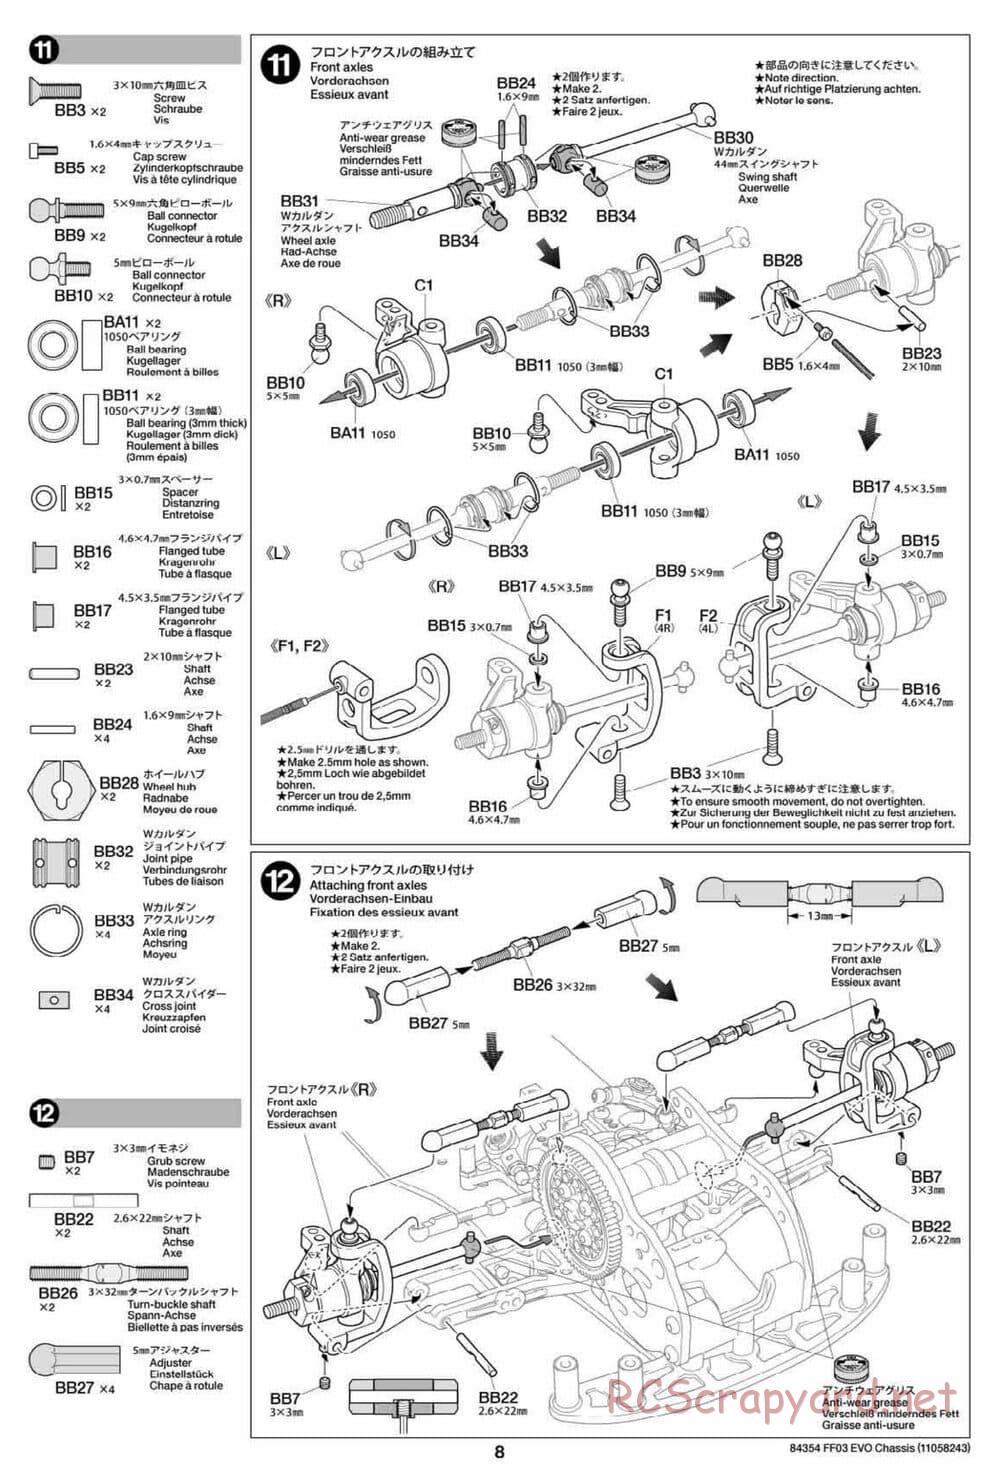 Tamiya - FF-03 Evo Chassis - Manual - Page 8